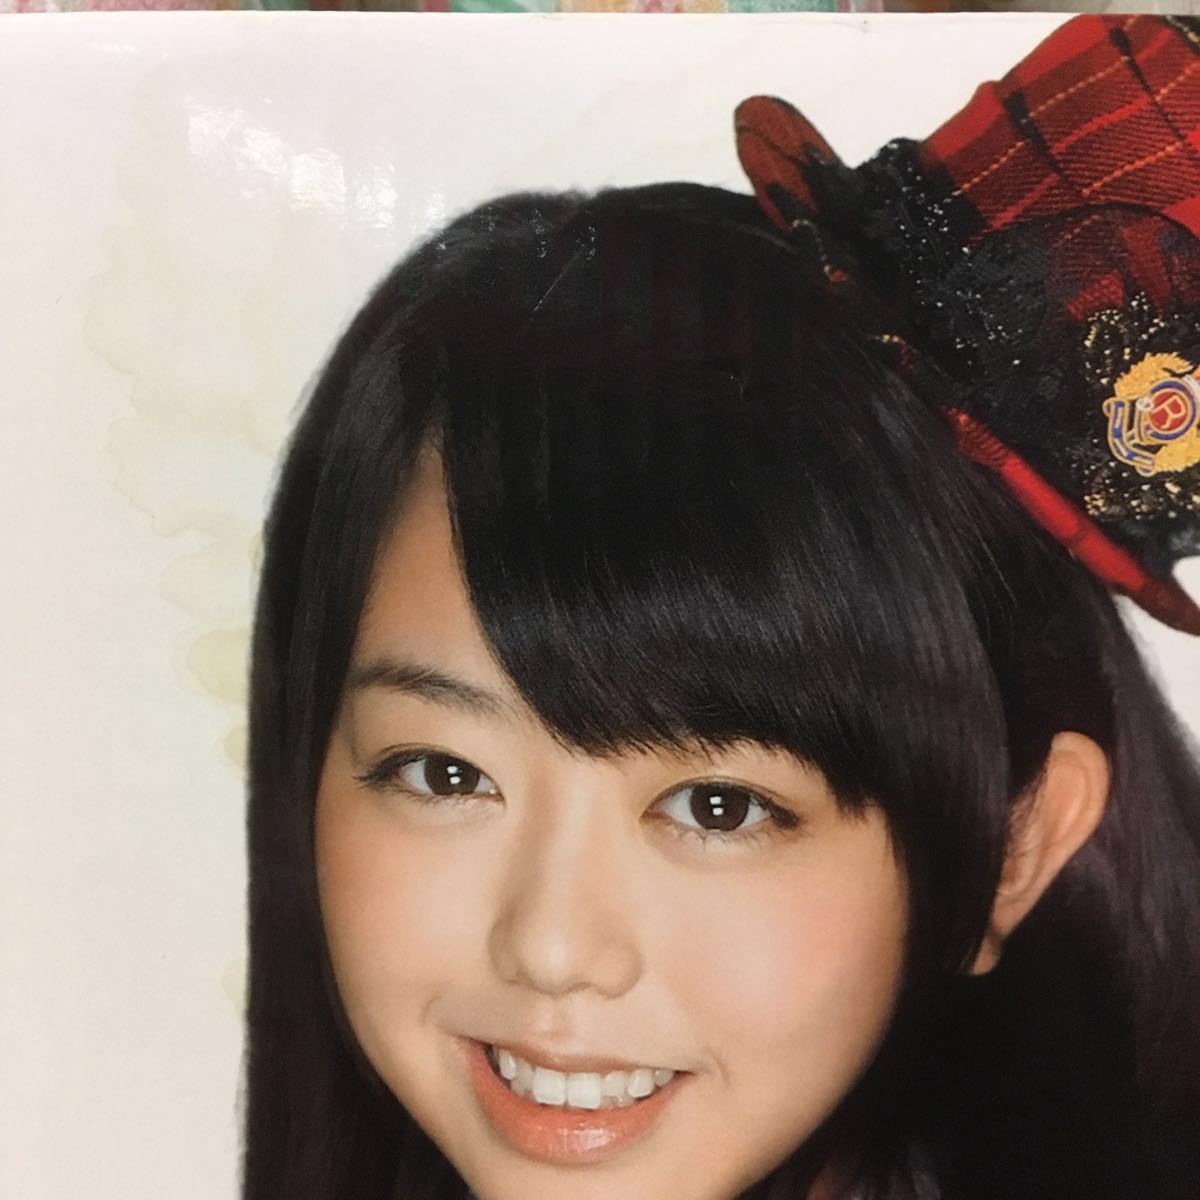  extra-large board AKB48 pachinko KYORAKU pop panel height 102.× width 76.× depth 53. Watanabe Mayu Ooshima Yuuko Sashihara Rino Kashiwagi Yuki Kojima Haruna 